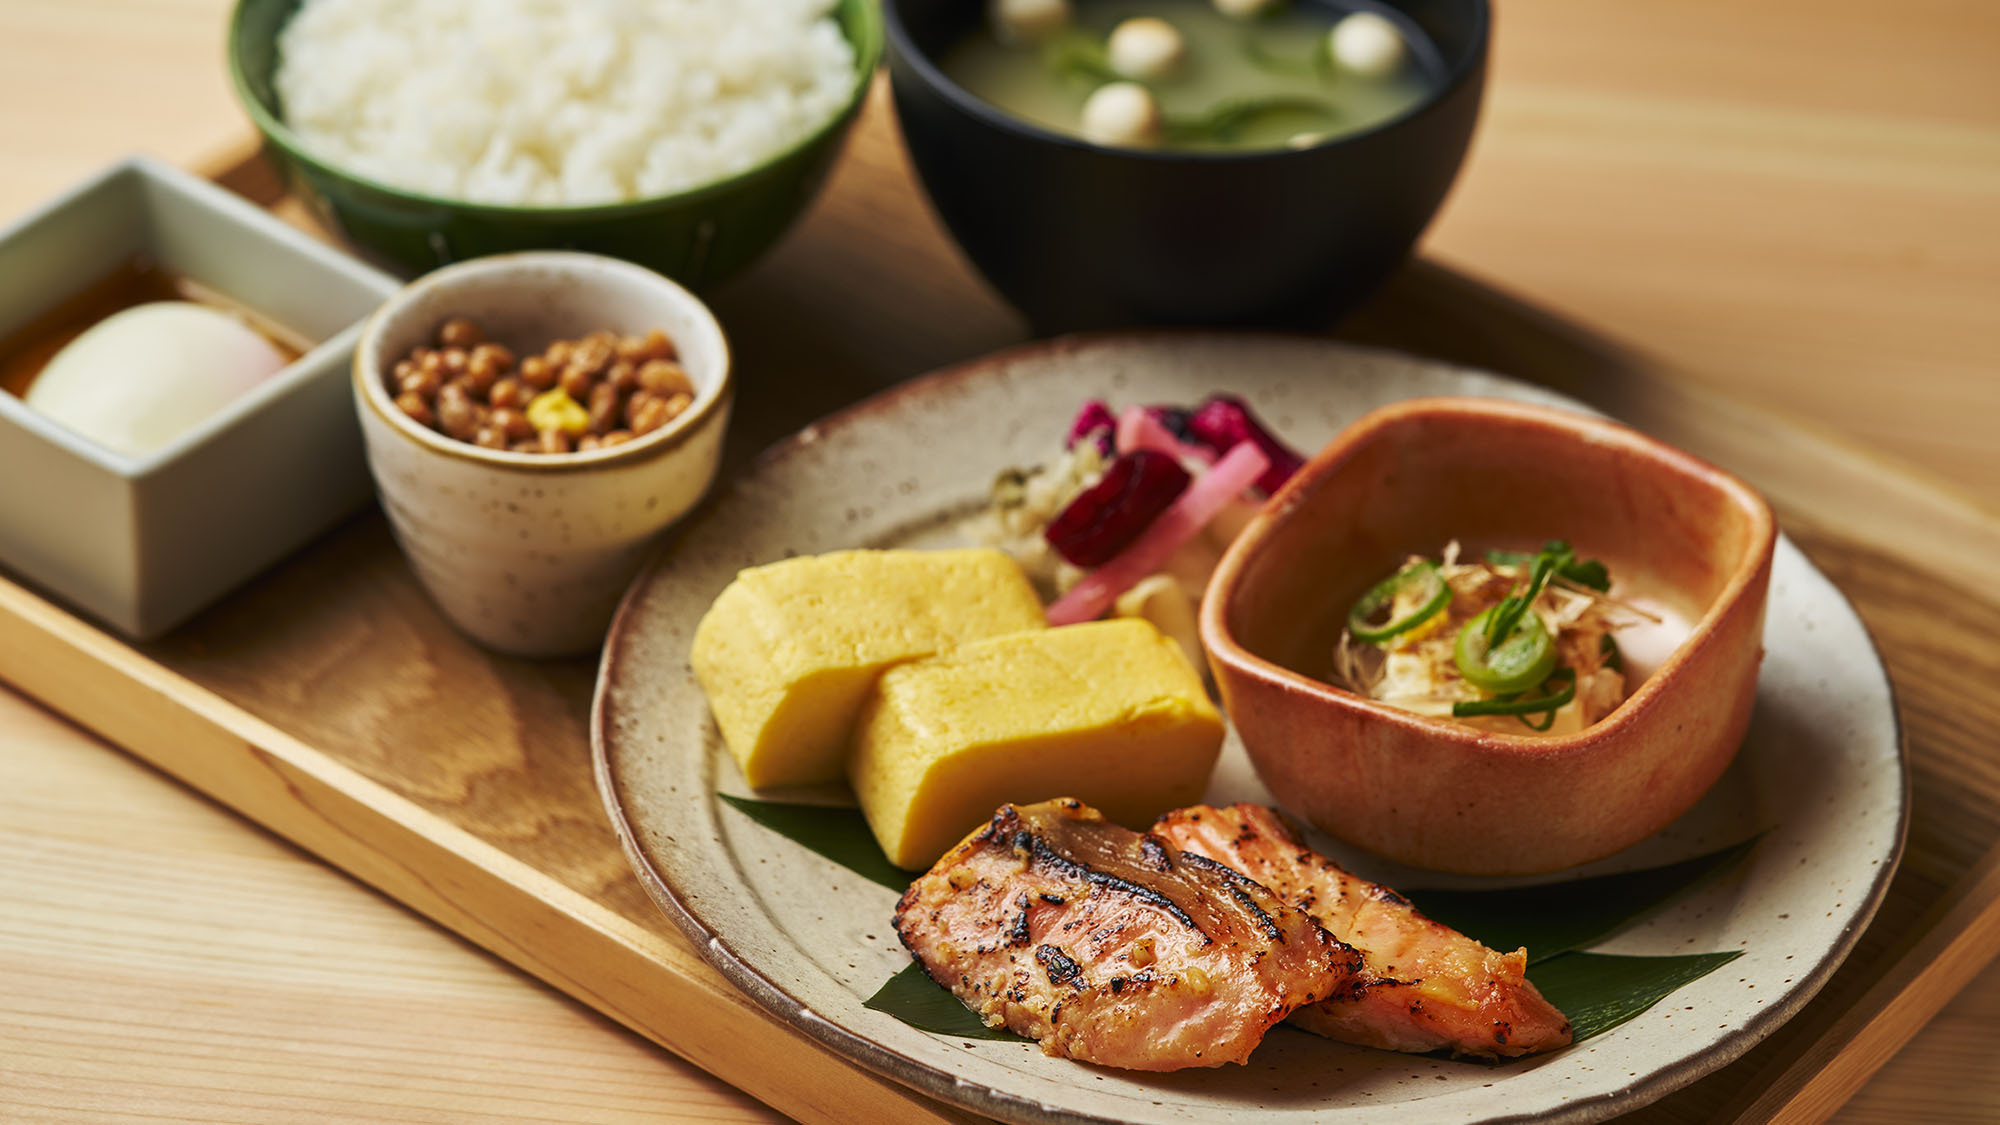 朝食ビュッフェには、地元京都から仕入れた新鮮な食材を使った各種お料理が並びます。